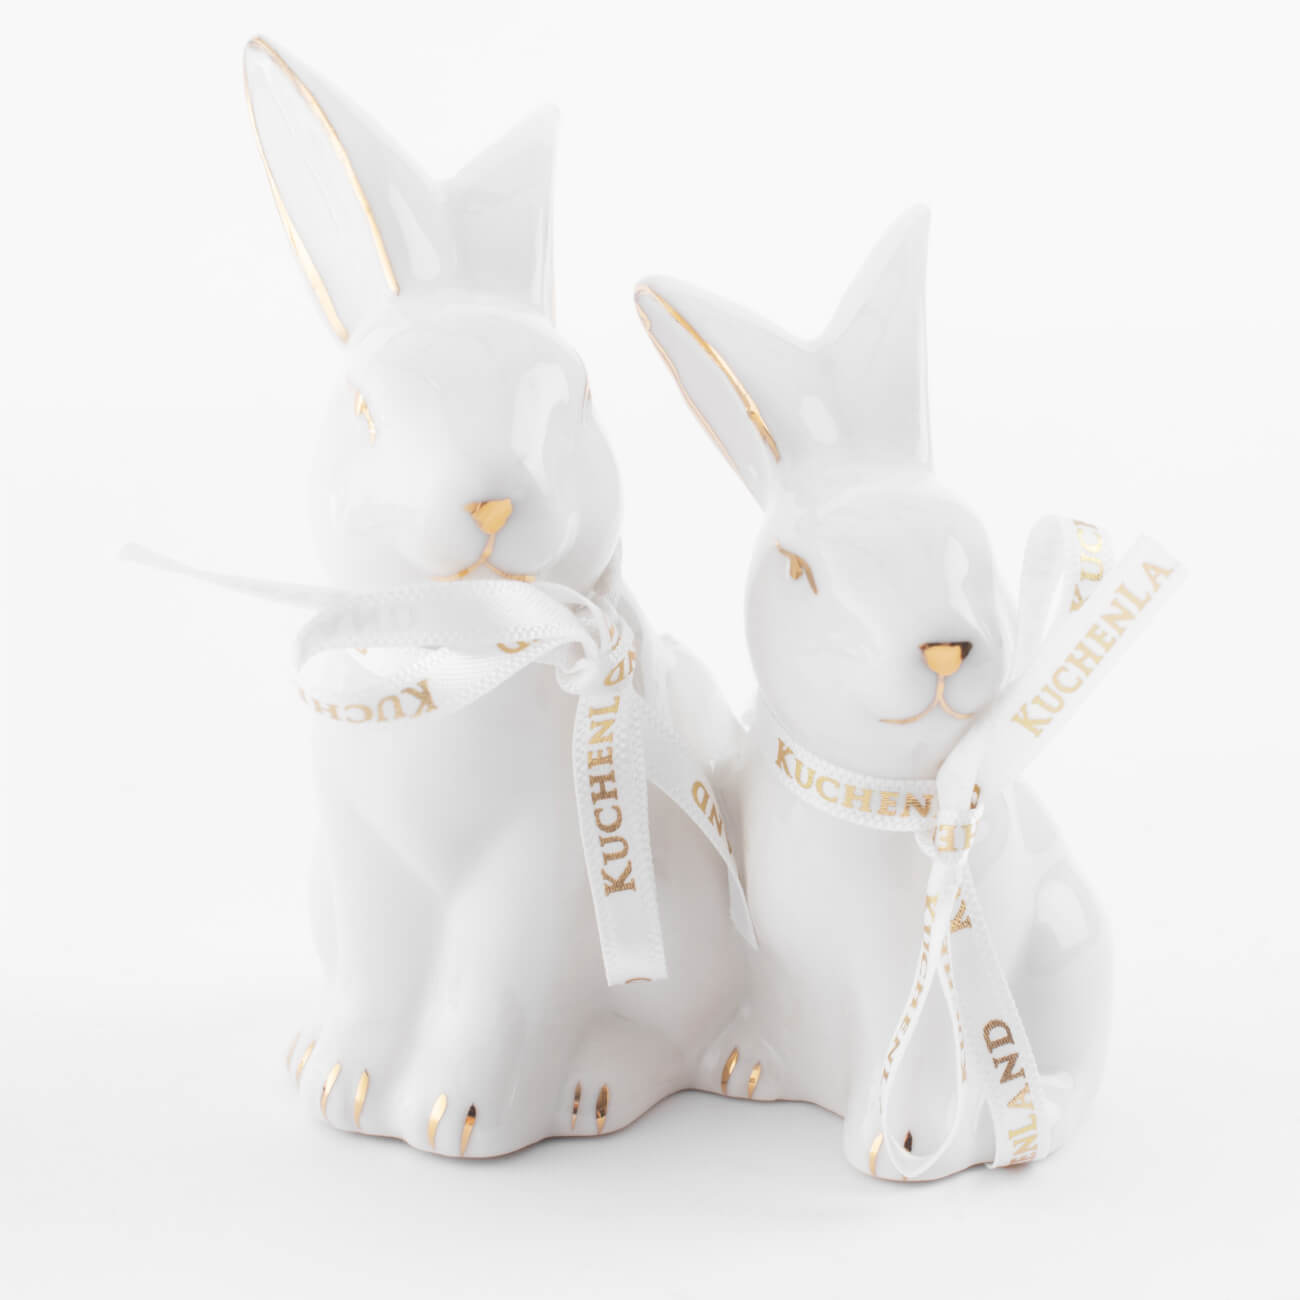 статуэтка 13 см полирезин бело золотистая кролик с очным ожерельем easter gold Статуэтка, 9 см, фарфор P, бело-золотистая, Кролики, Easter gold